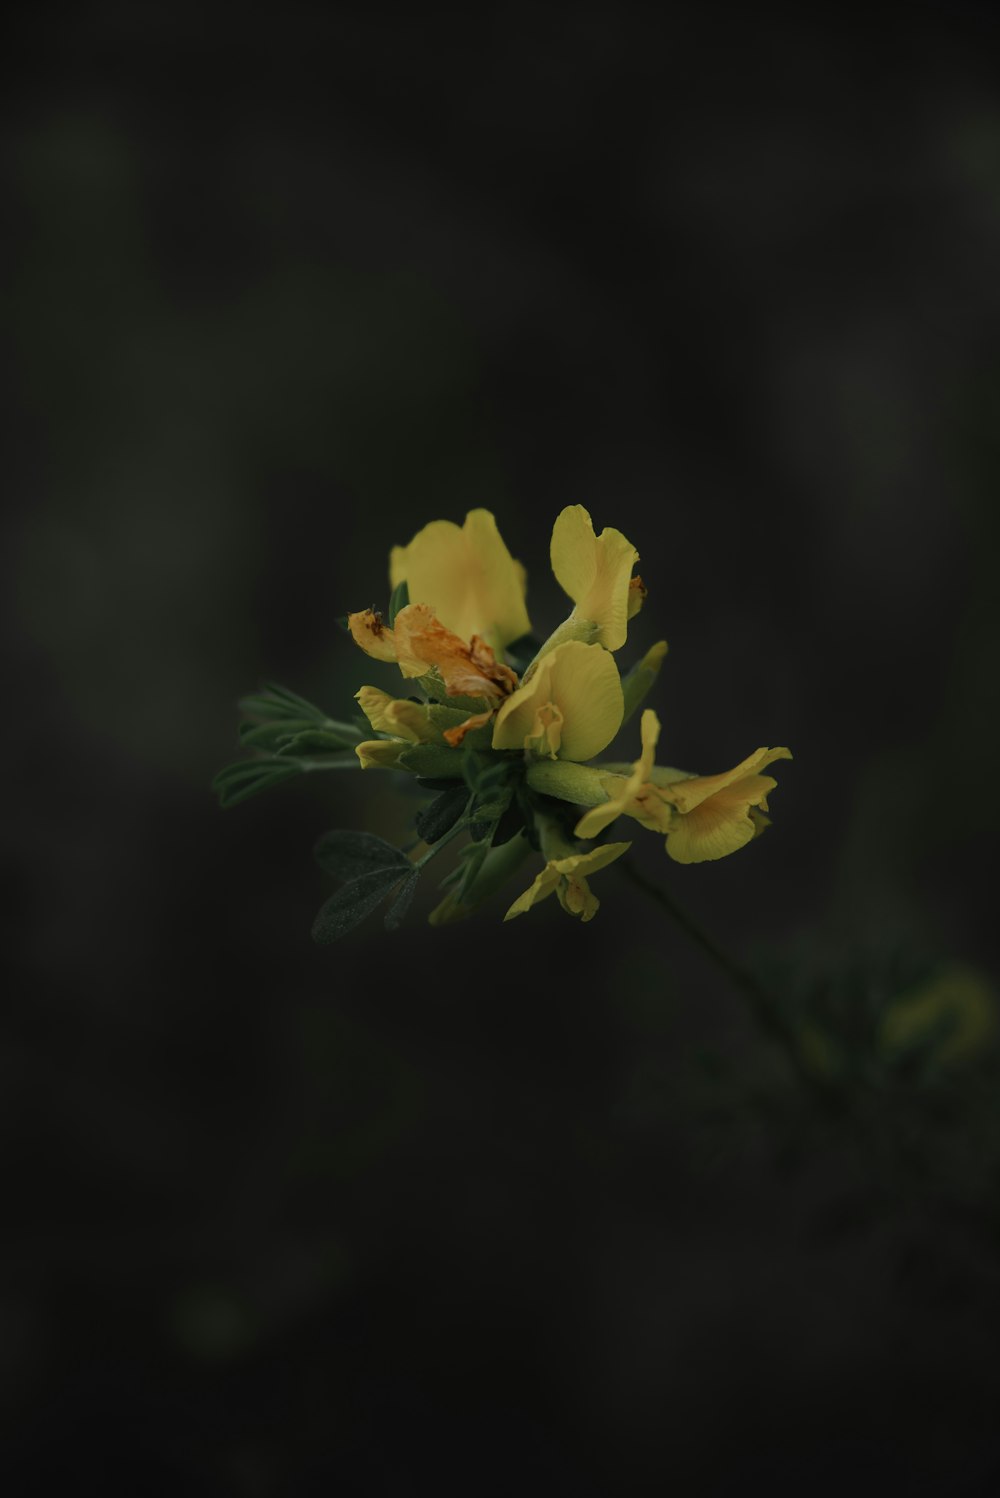 um close up de uma flor amarela em um fundo preto